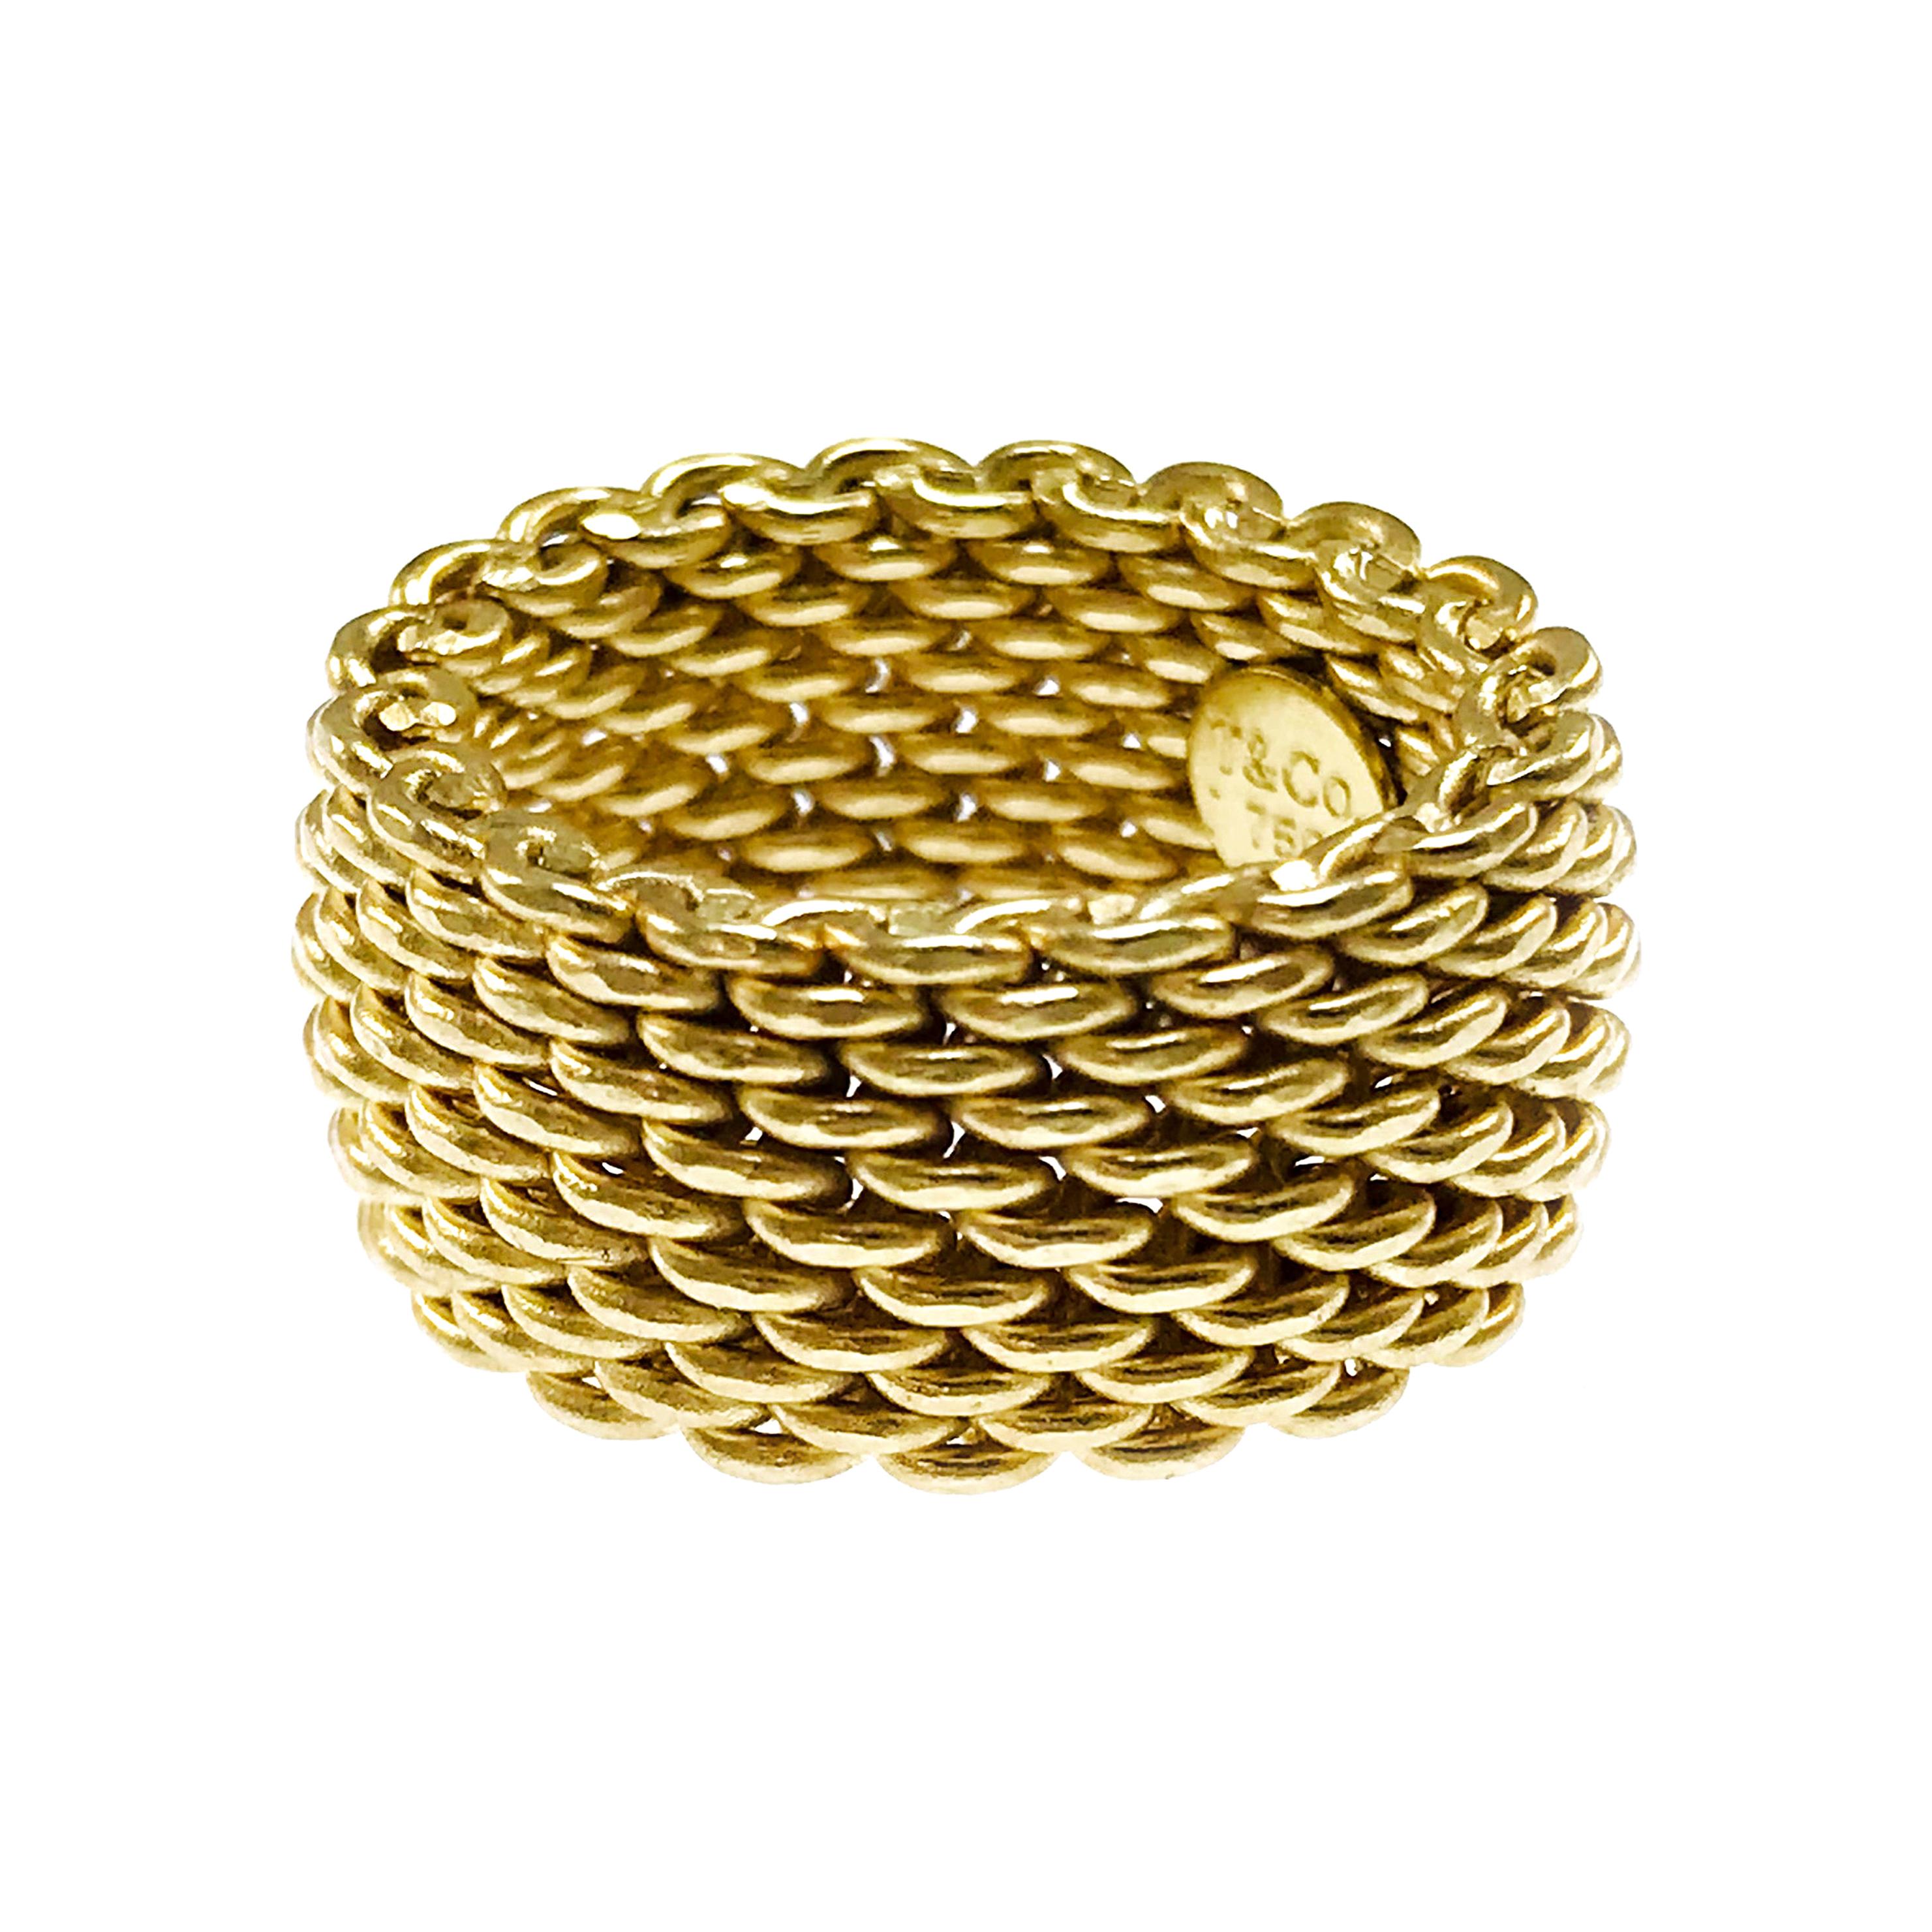 Tiffany & Co. 18 Karat Somerset Gold Mesh Ring